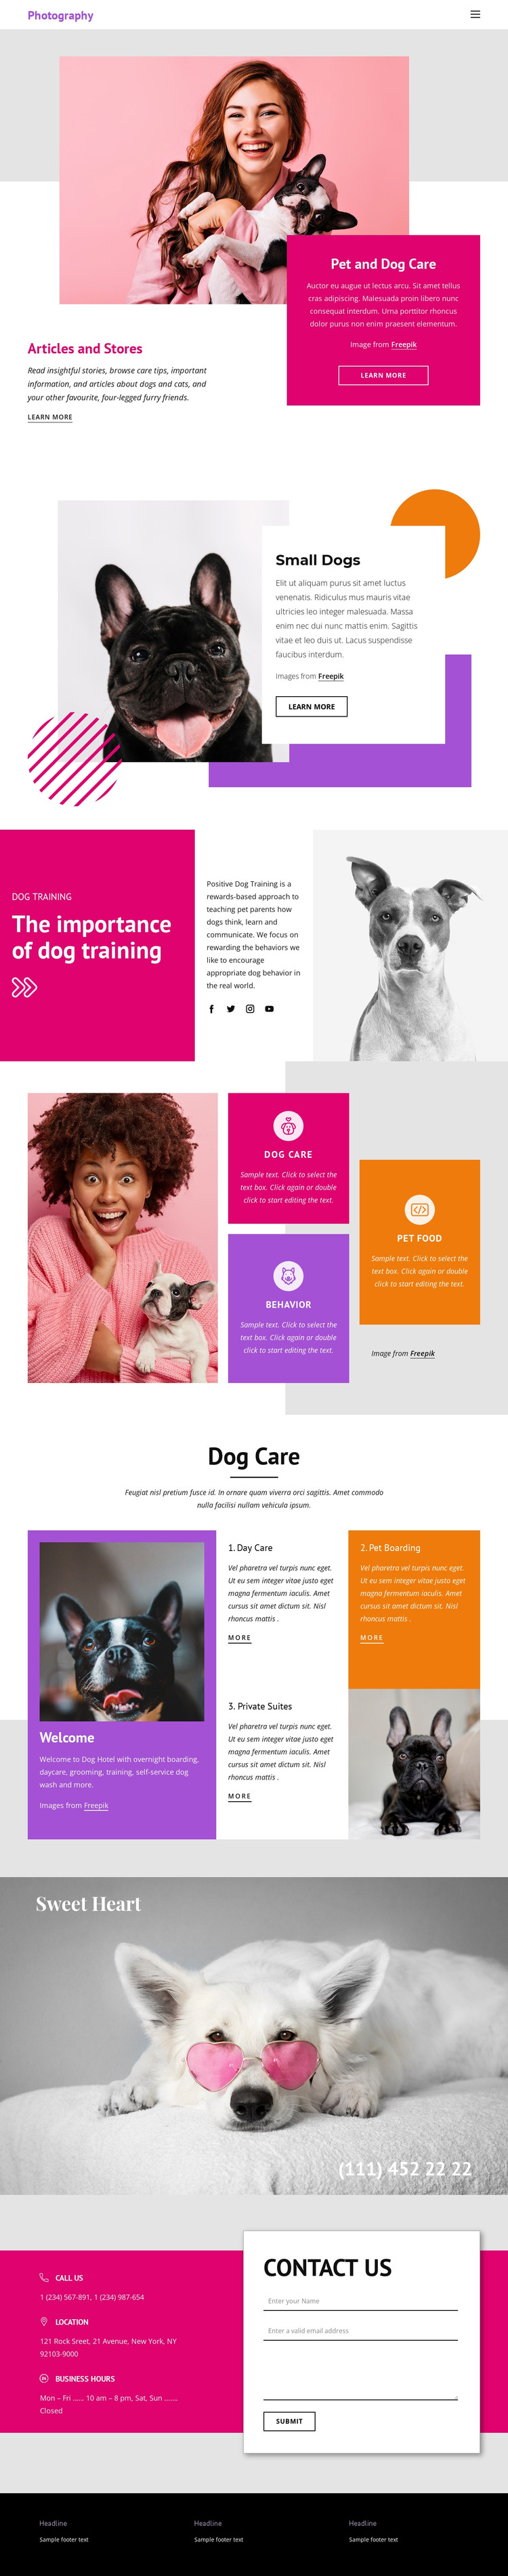 Pets Stories Web Design